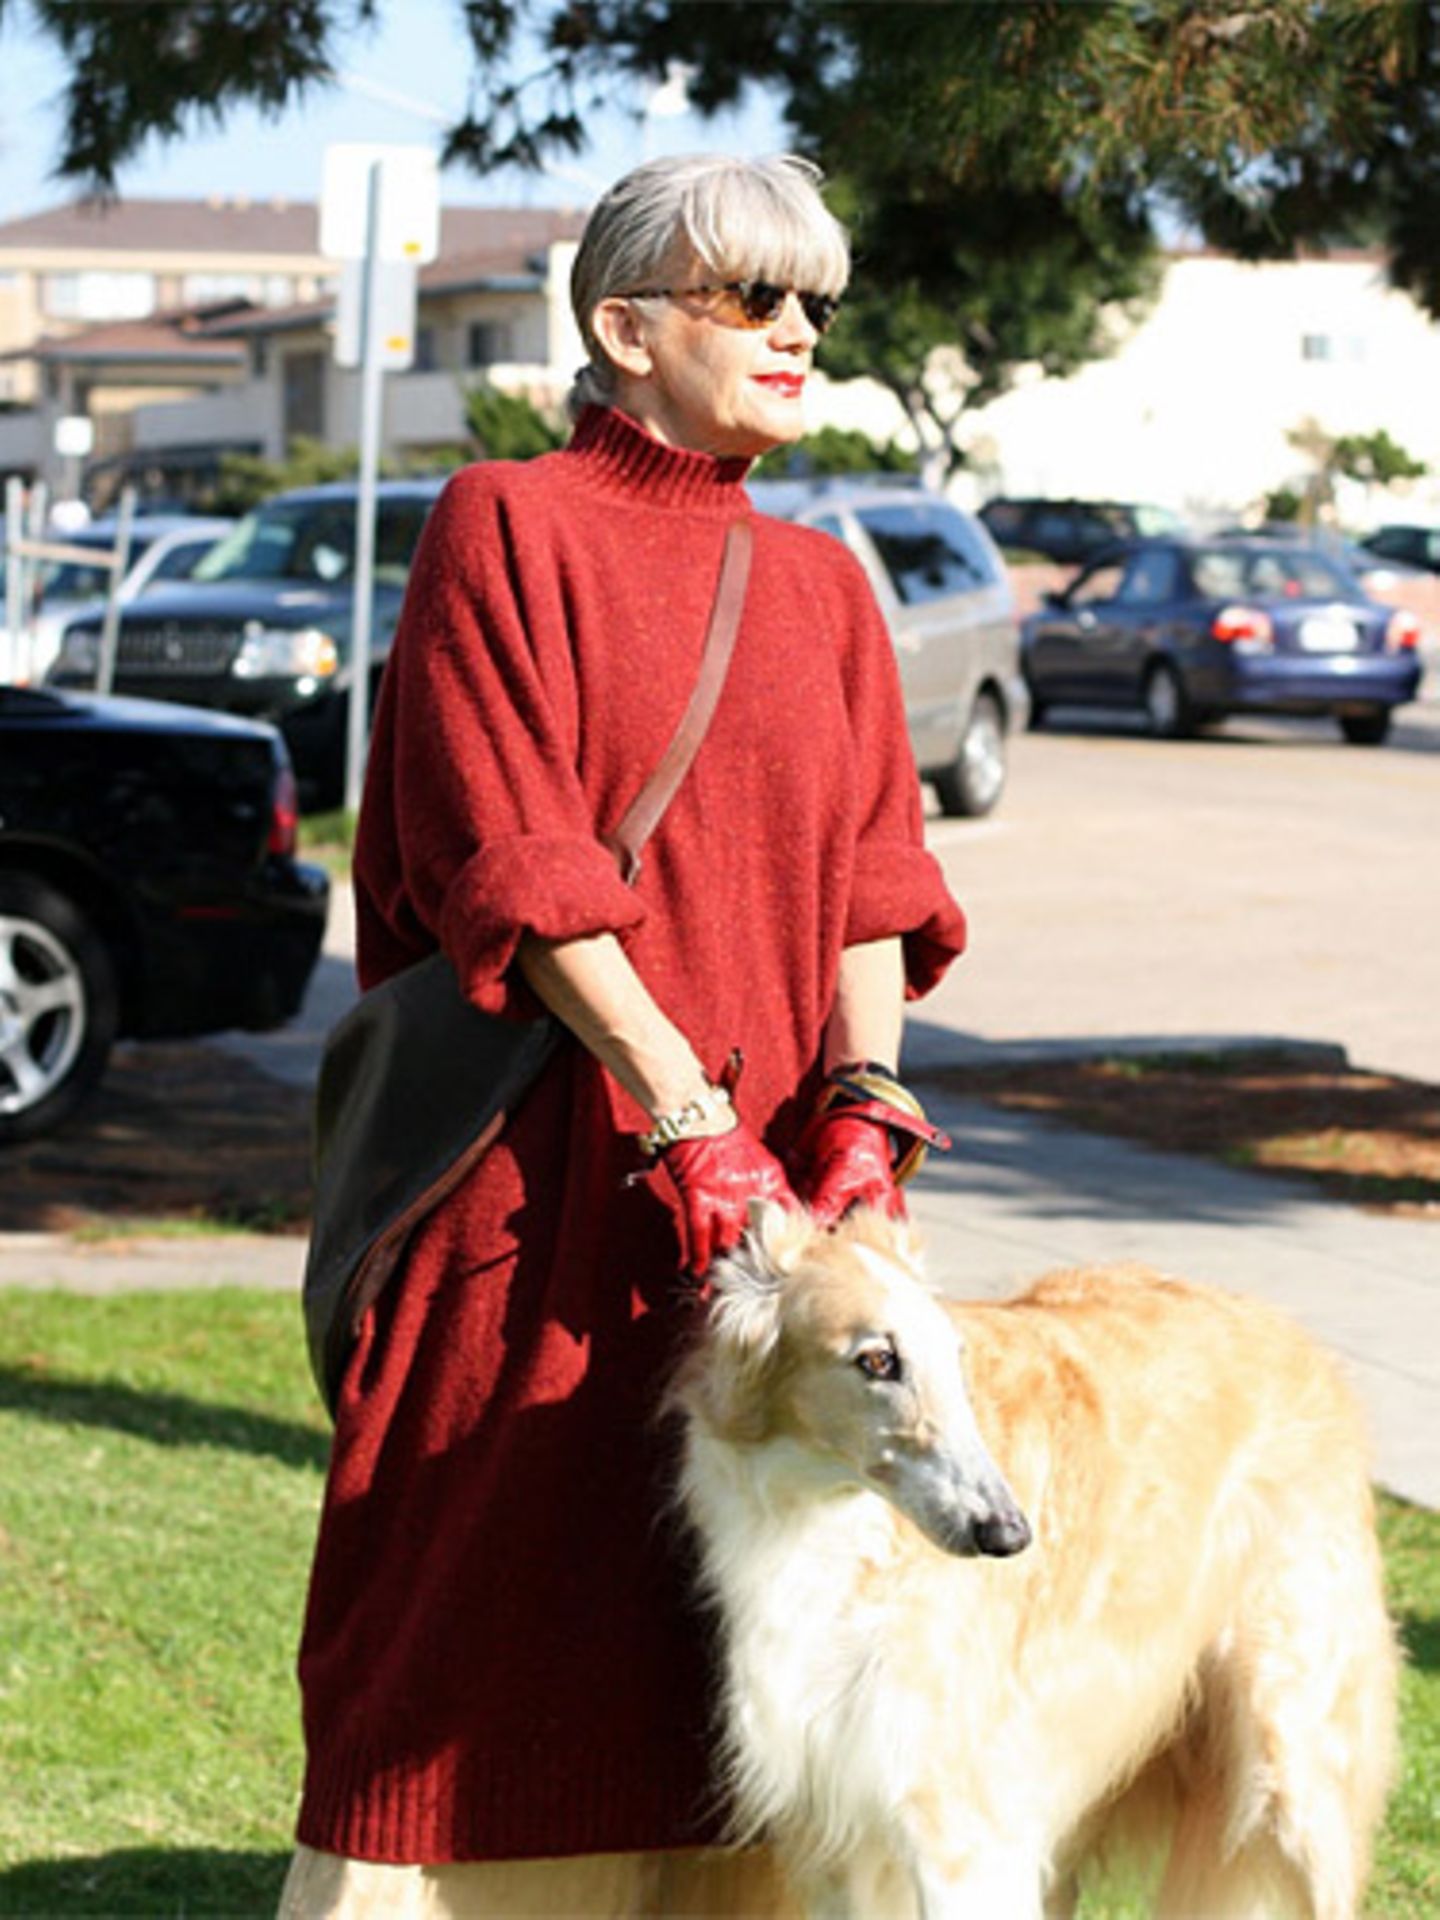 Lubi lässt sich im sonnigen San Diego mit Hund und Sonnenbrille fotografieren. Sie mag die Farbe Rot und empfindet ihr silbergraues Haar als "wundervolles Mysterium". Mehr bei BRIGITTE-woman.de New York Style: Mode im Big Apple Streetstyle: Die Looks aus Paris Streetstyle Berlin: Alle mal herschauen!